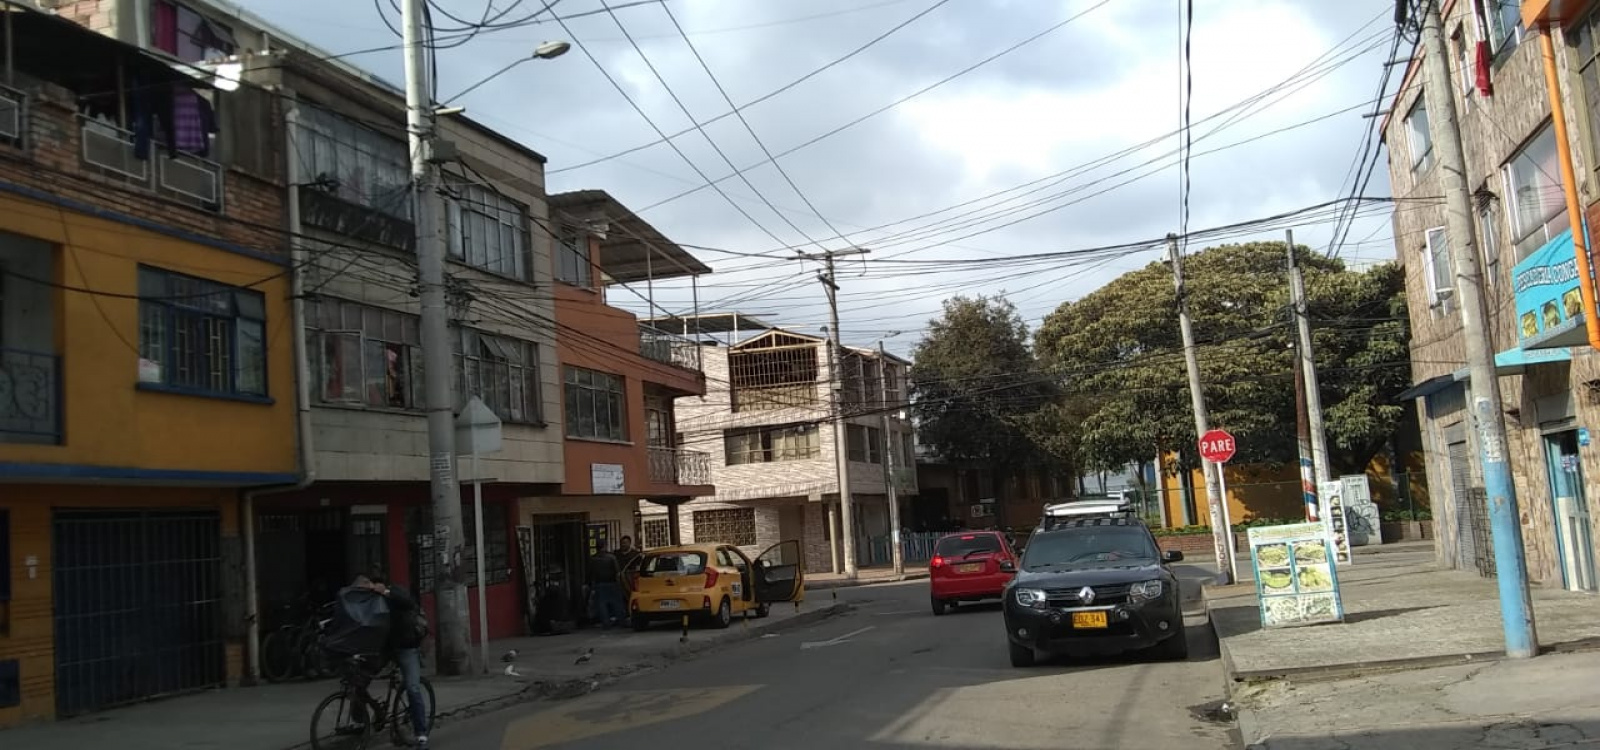 4 A 17 18 C, Bogotá, Centro, Eduardo Santos, 1 Habitación Habitaciones,1 BañoBathrooms,Bodegas,Venta,18 C ,3431